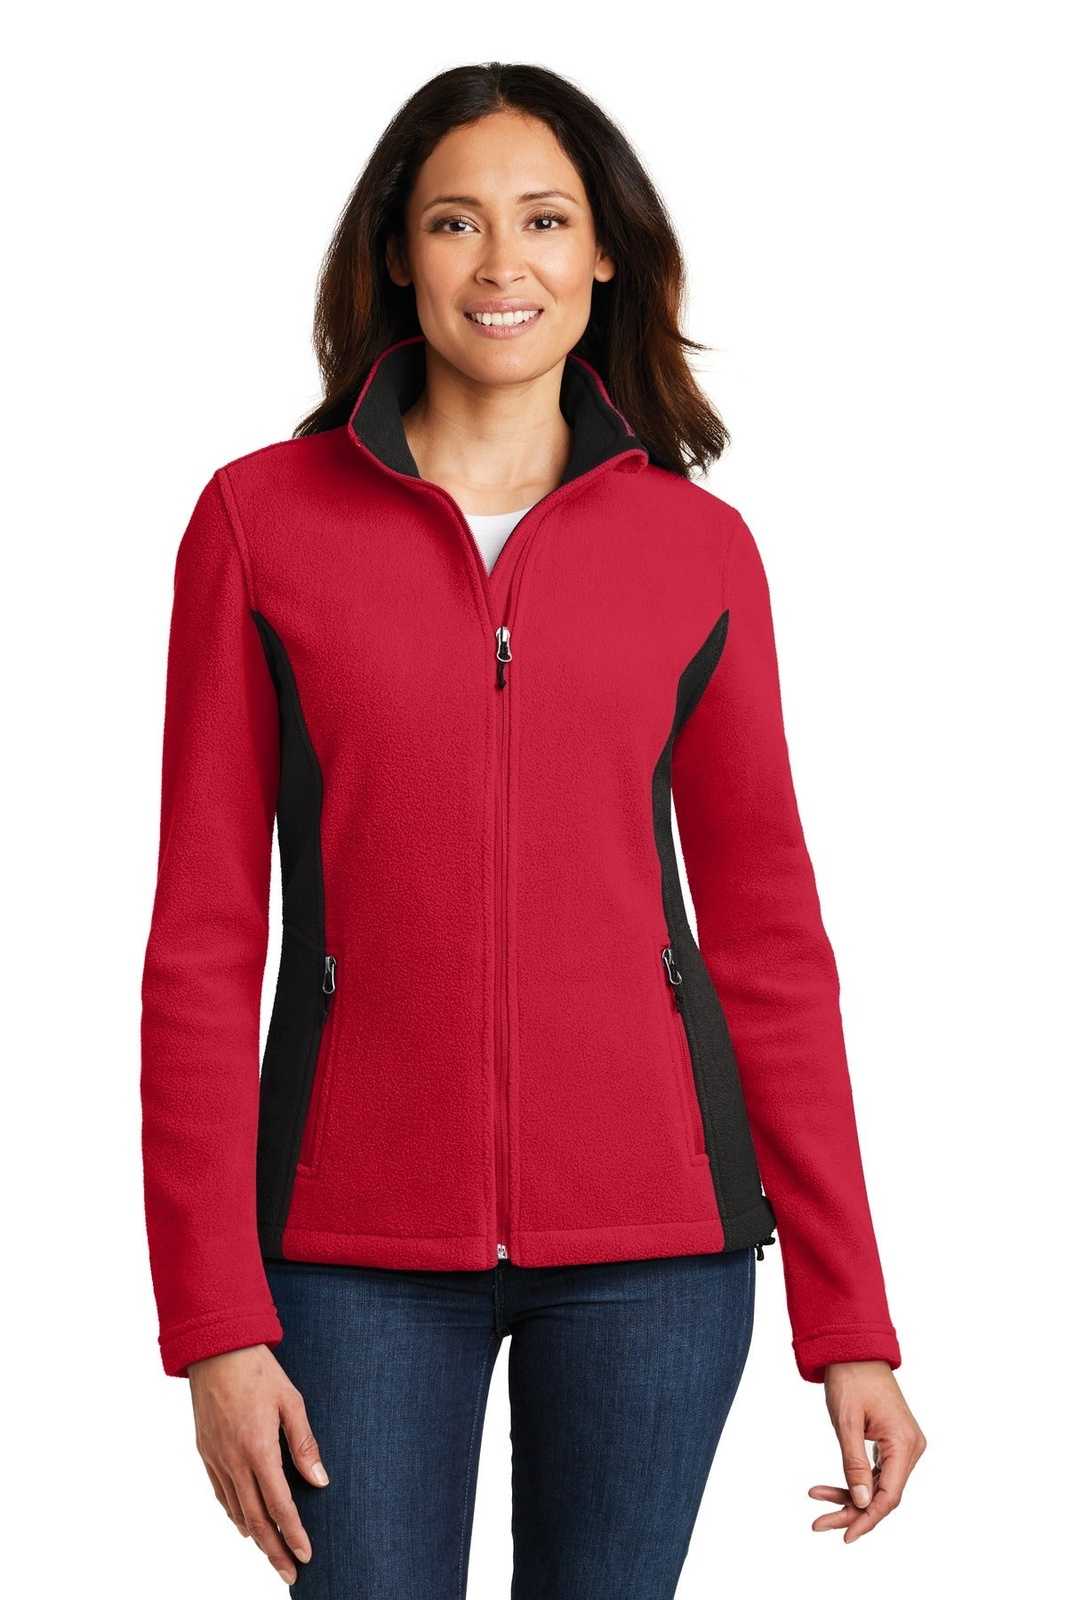 Port Authority L216 Ladies Colorblock Value Fleece Jacket - Rich Red Black - HIT a Double - 1